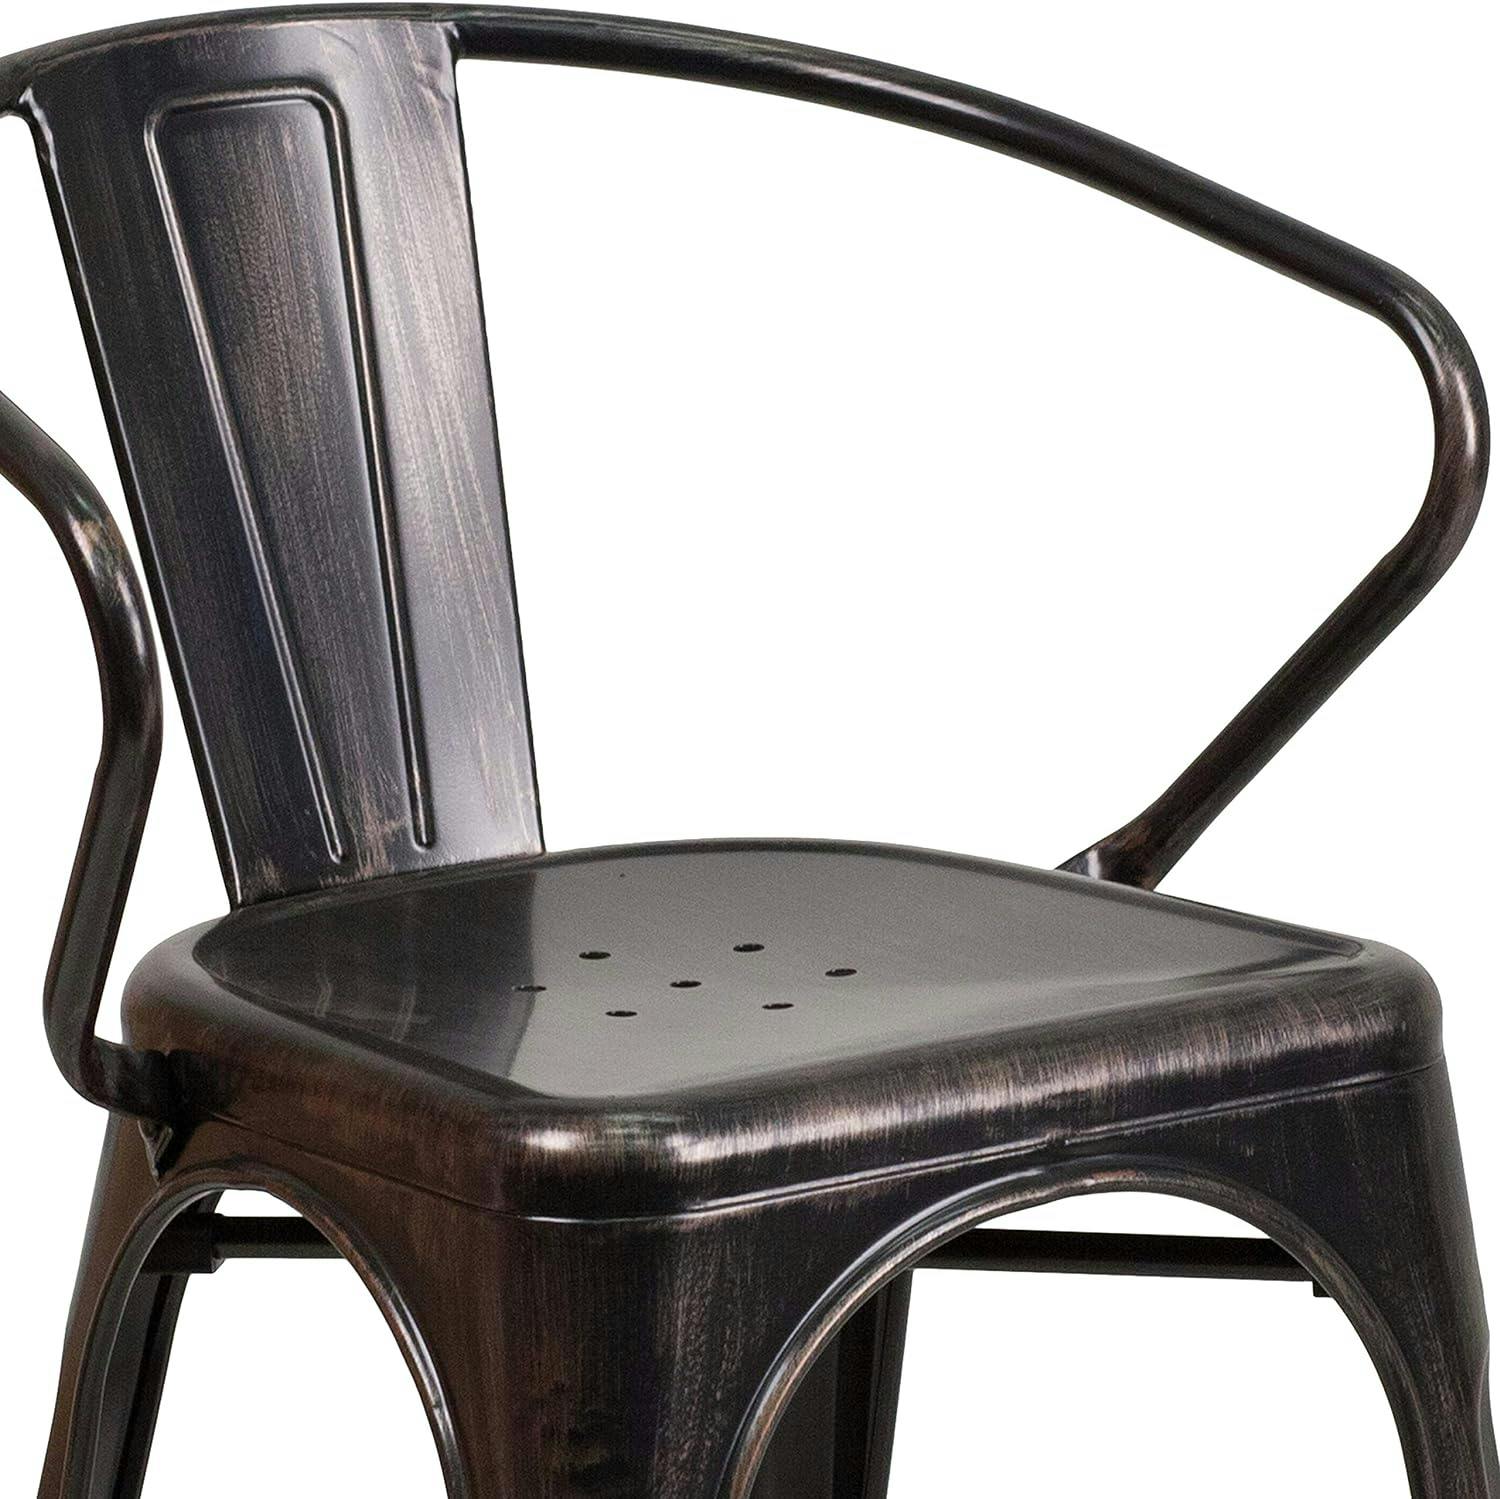 Luna Vintage Black-Antique Gold Steel Stackable Dining Chair